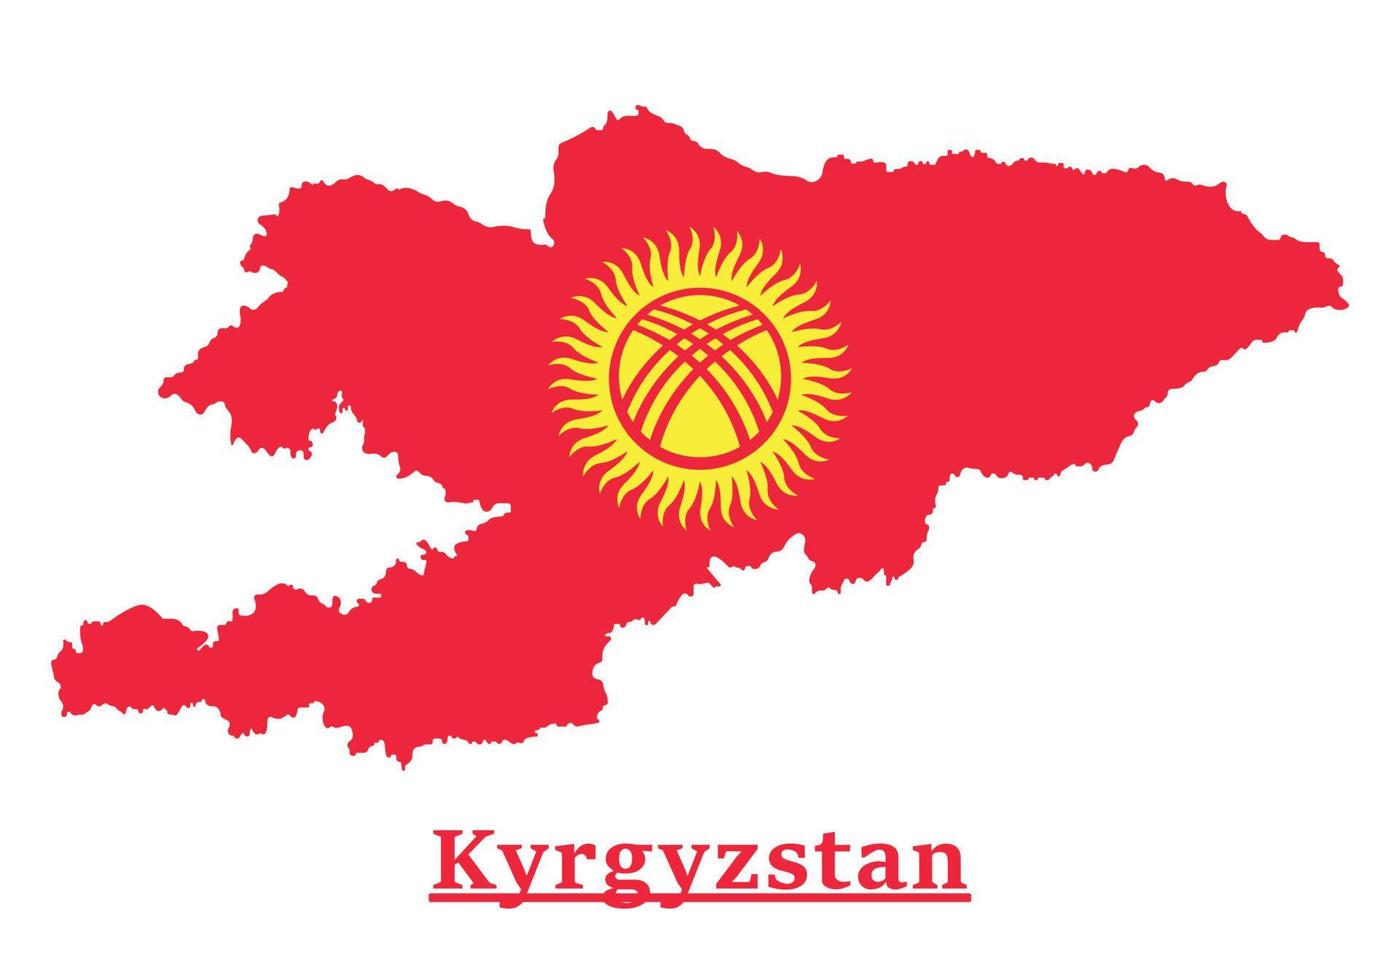 Kyrgyzstan nazionale bandiera carta geografica disegno, illustrazione di Kyrgyzstan nazione bandiera dentro il carta geografica vettore